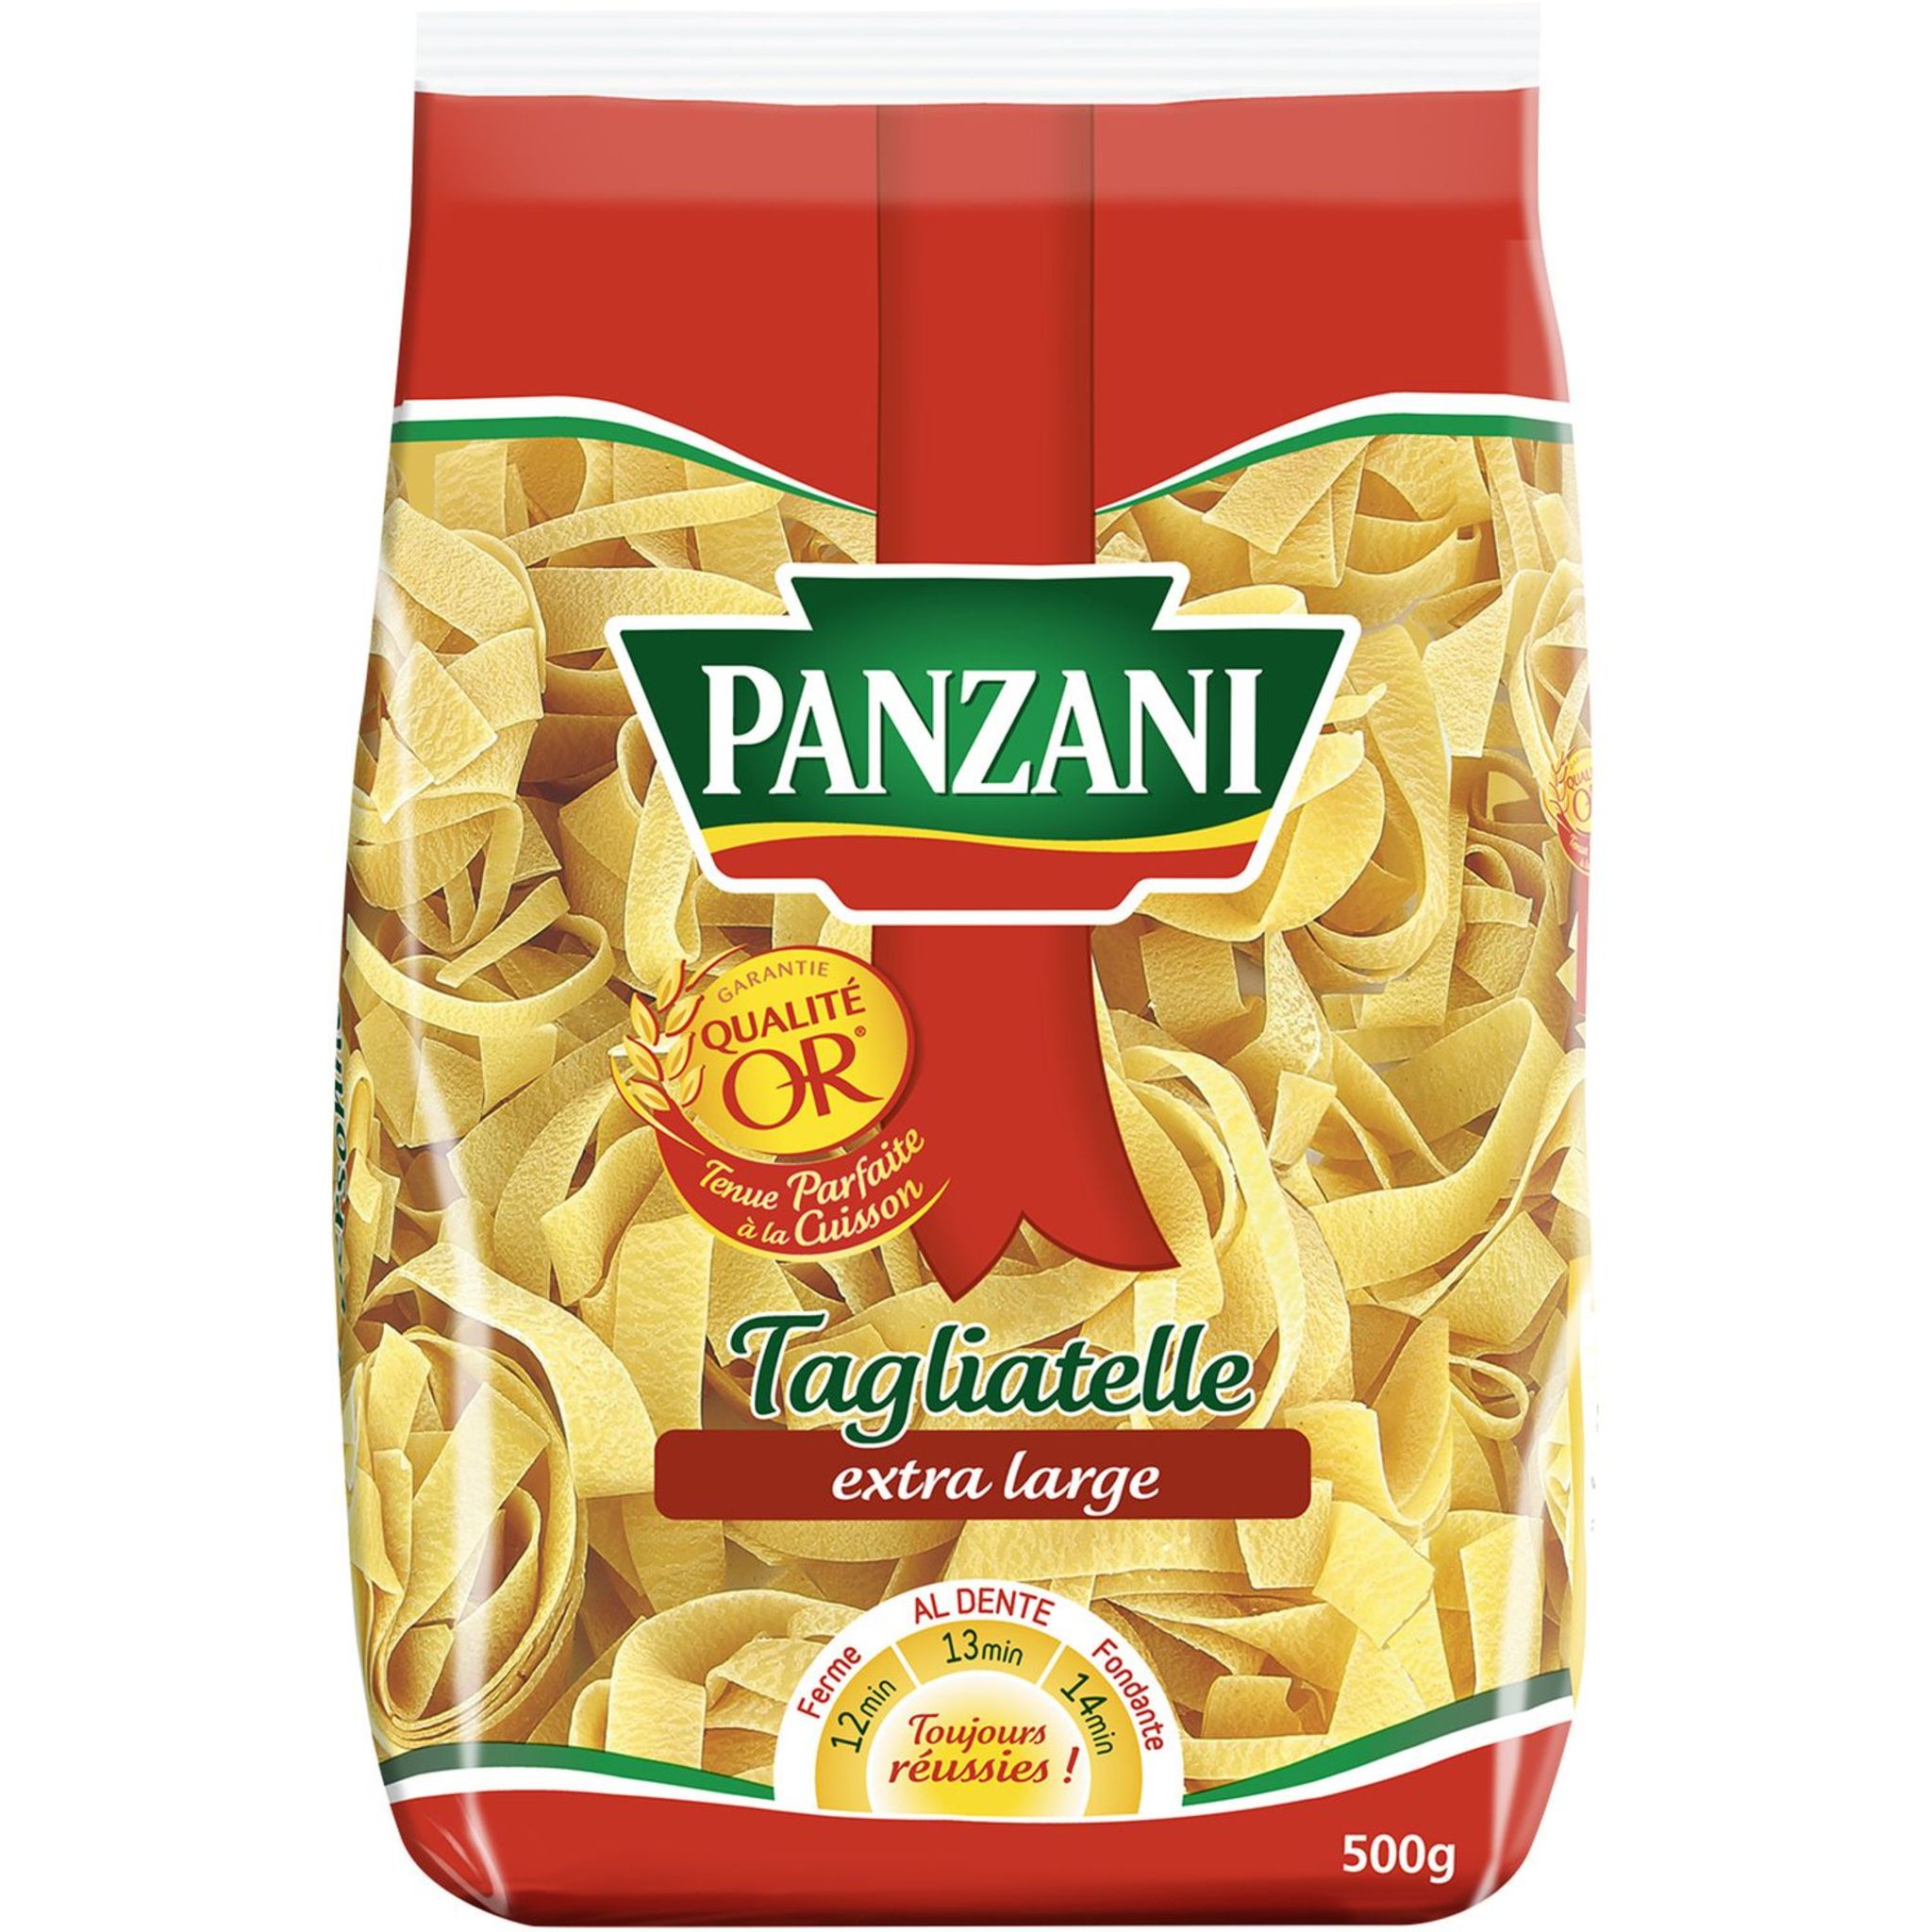 Installé à Lyon, le géant des pâtes Panzani va être vendu pour 550